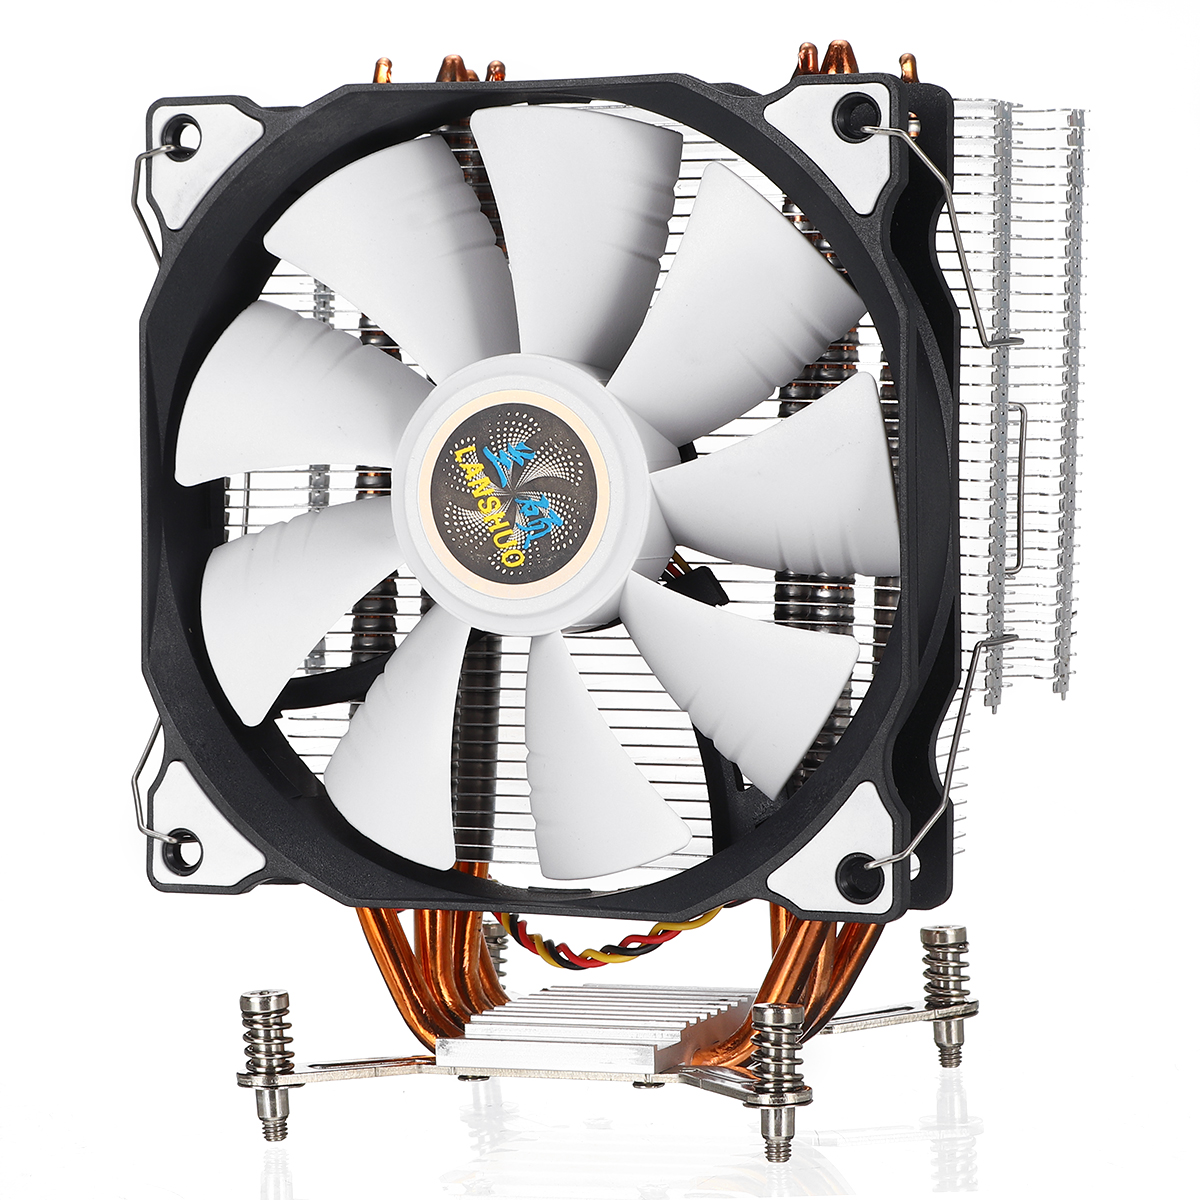 LanShuo 120mm 4 Heat Pipe CPU Cooler 3Pin Cooling Fan For X79 X99 X299 2011 Socket